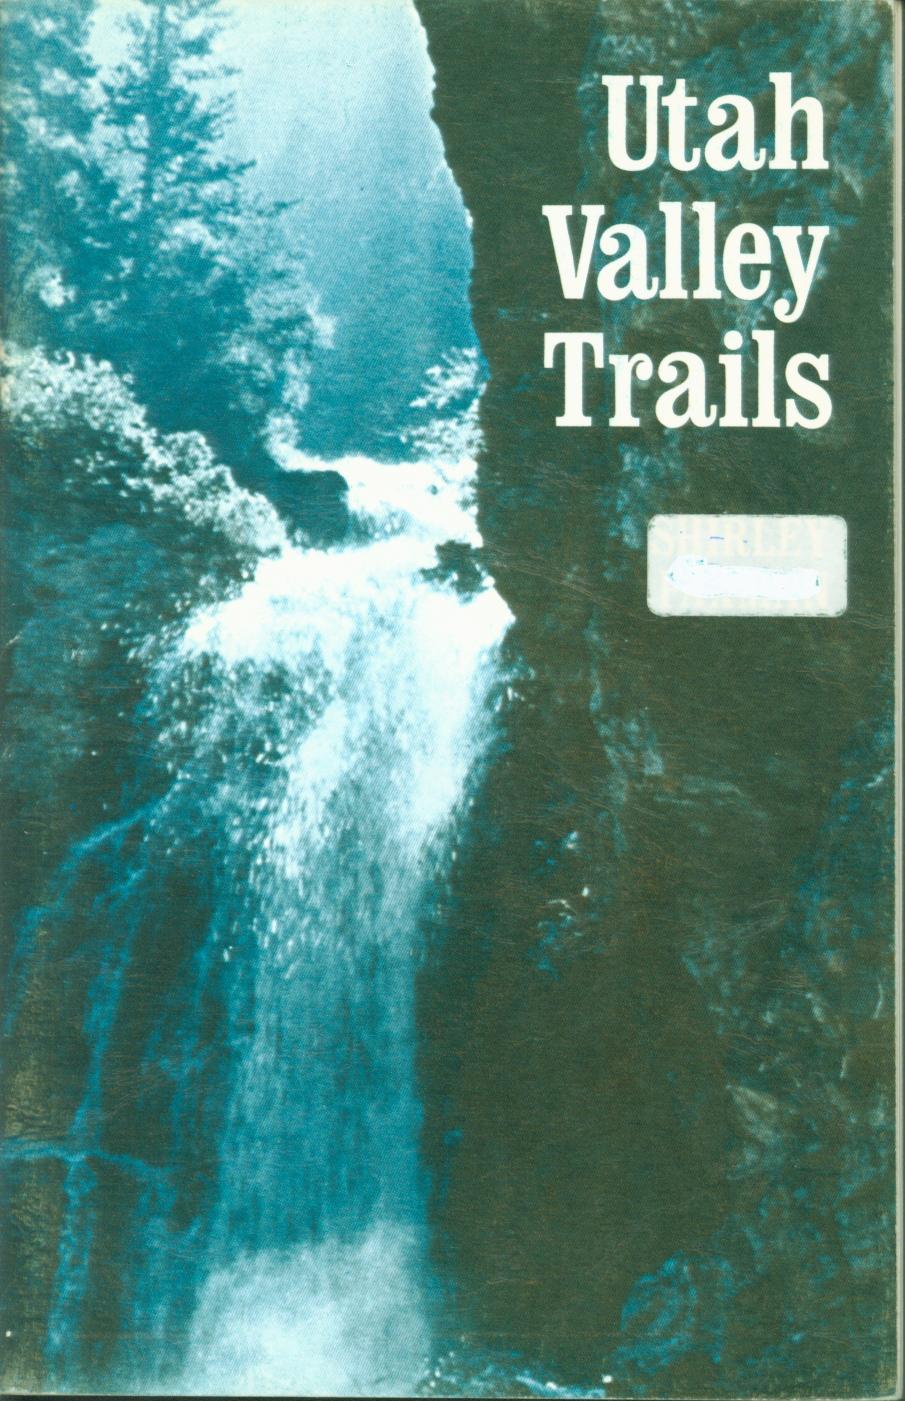 UTAH VALLEY TRAILS. 